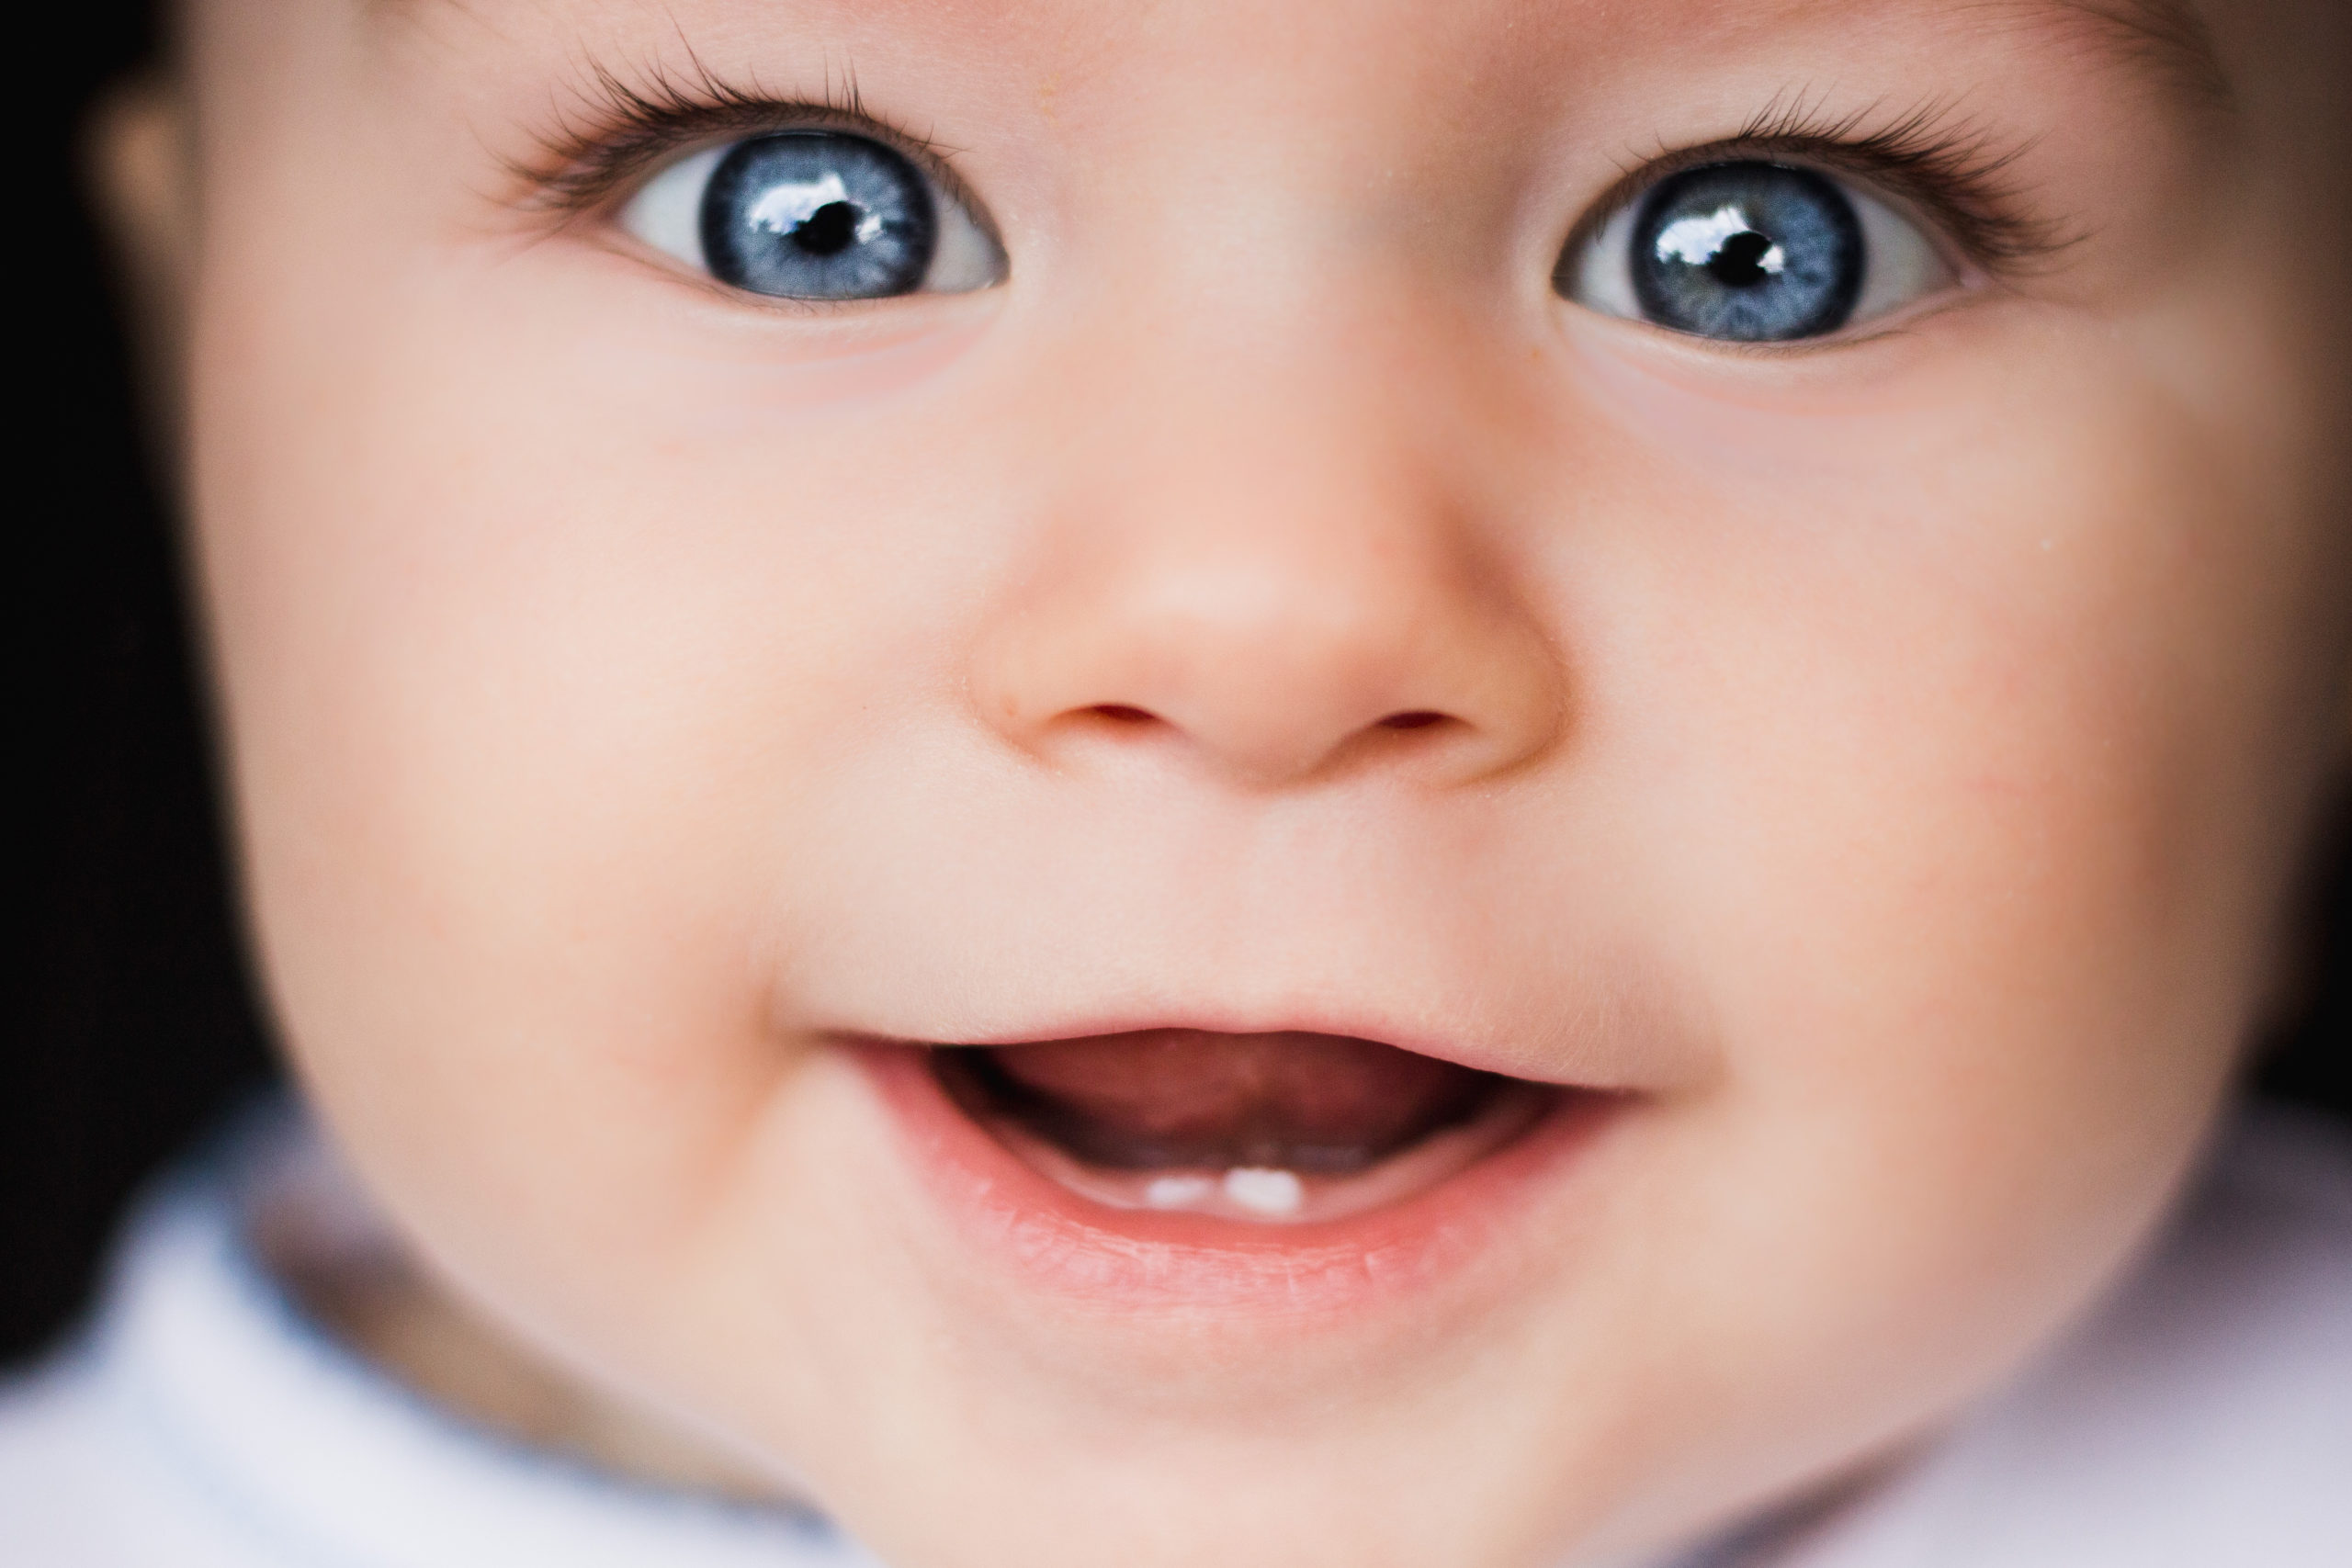 tooth development of children